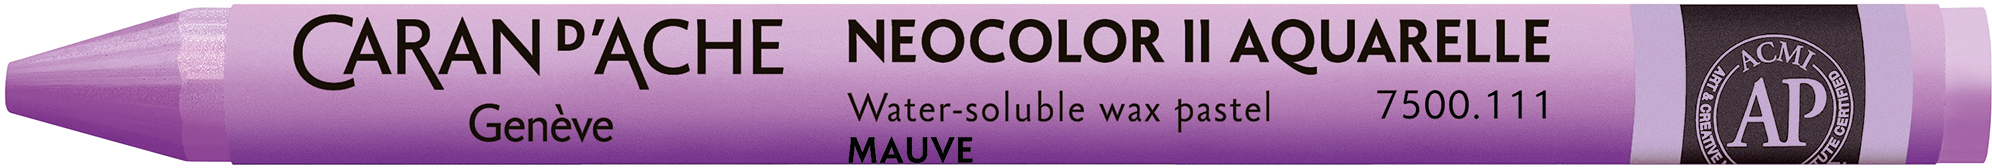 CARAN D'ACHE Crayons de cire Neocolor II 7500.111 violet clair violet clair